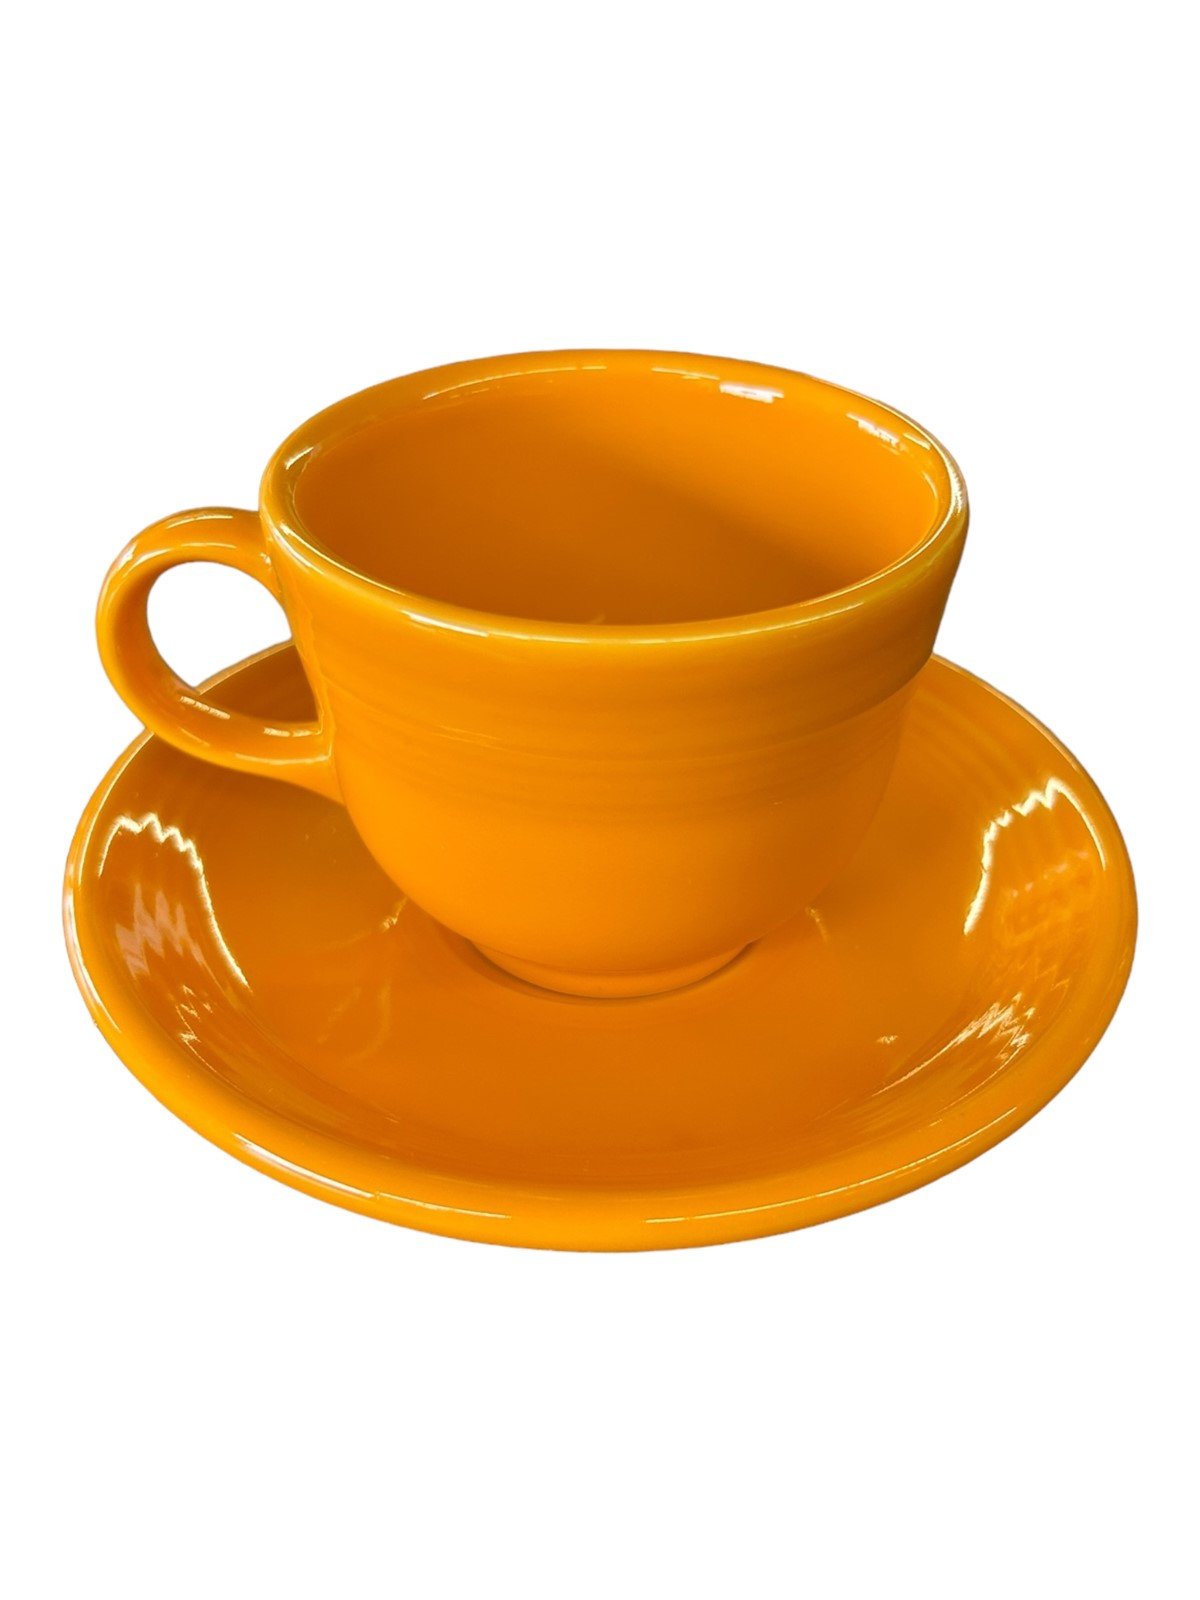 Fiesta - Butterscotch Yellow Tea Cup & Saucer Homer Laughlin Ceramic Set Dining